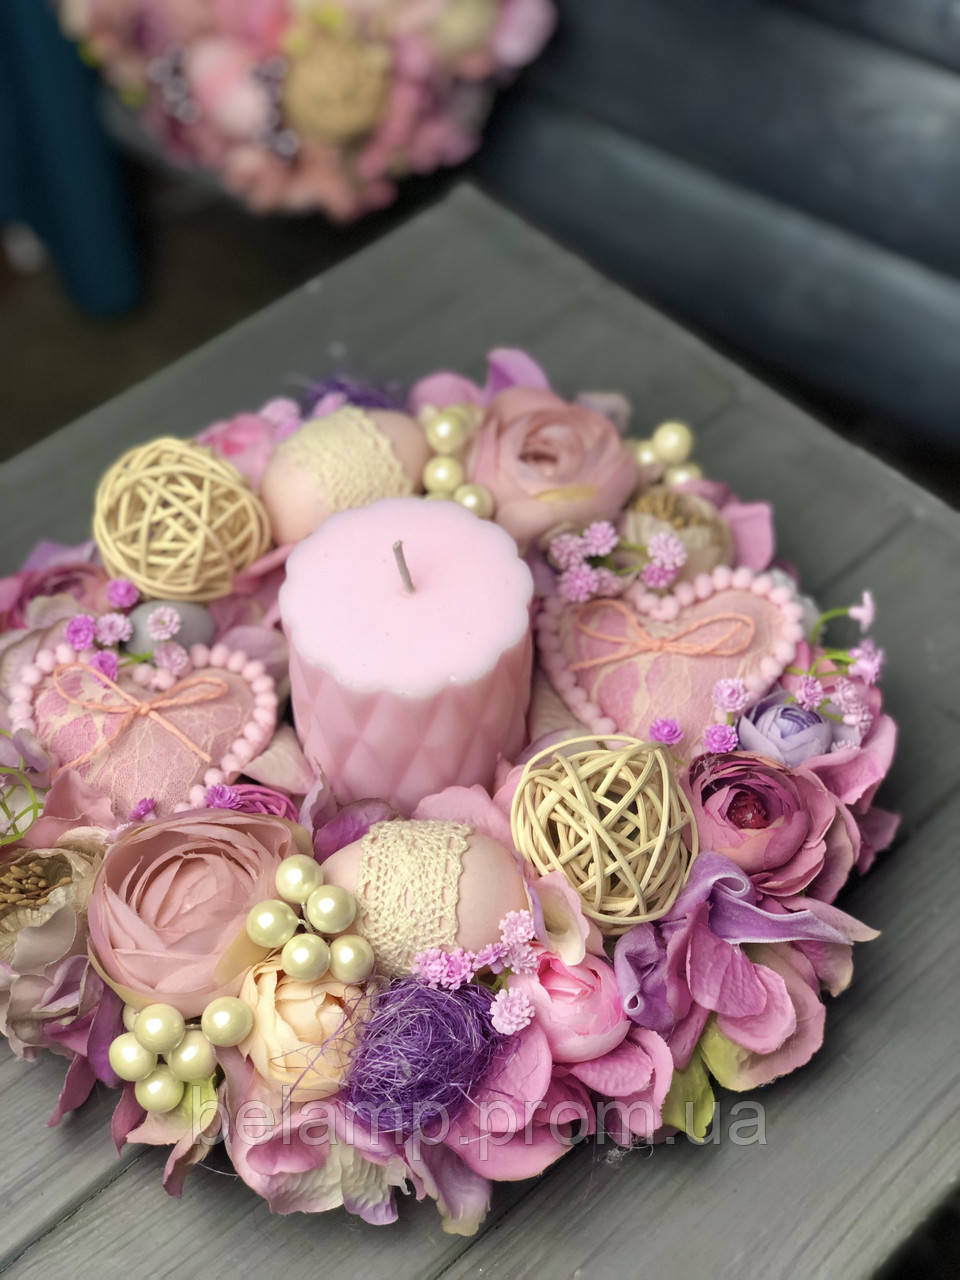 Пасхальная композиция на стол со свечей в фиолетово-розовых оттенках